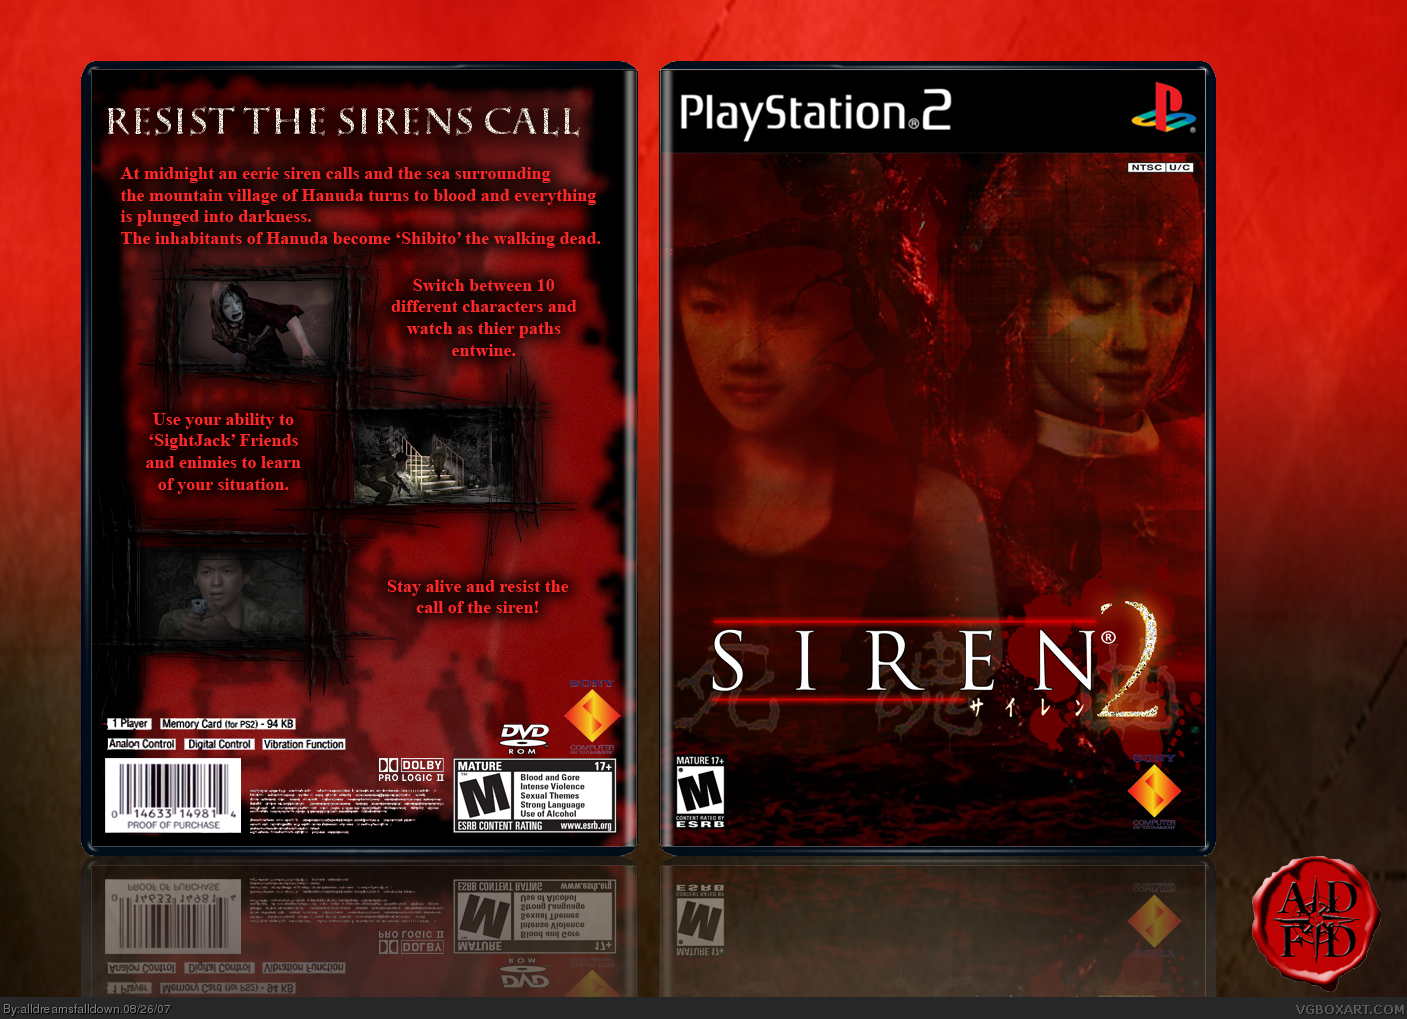 Siren 2 box cover